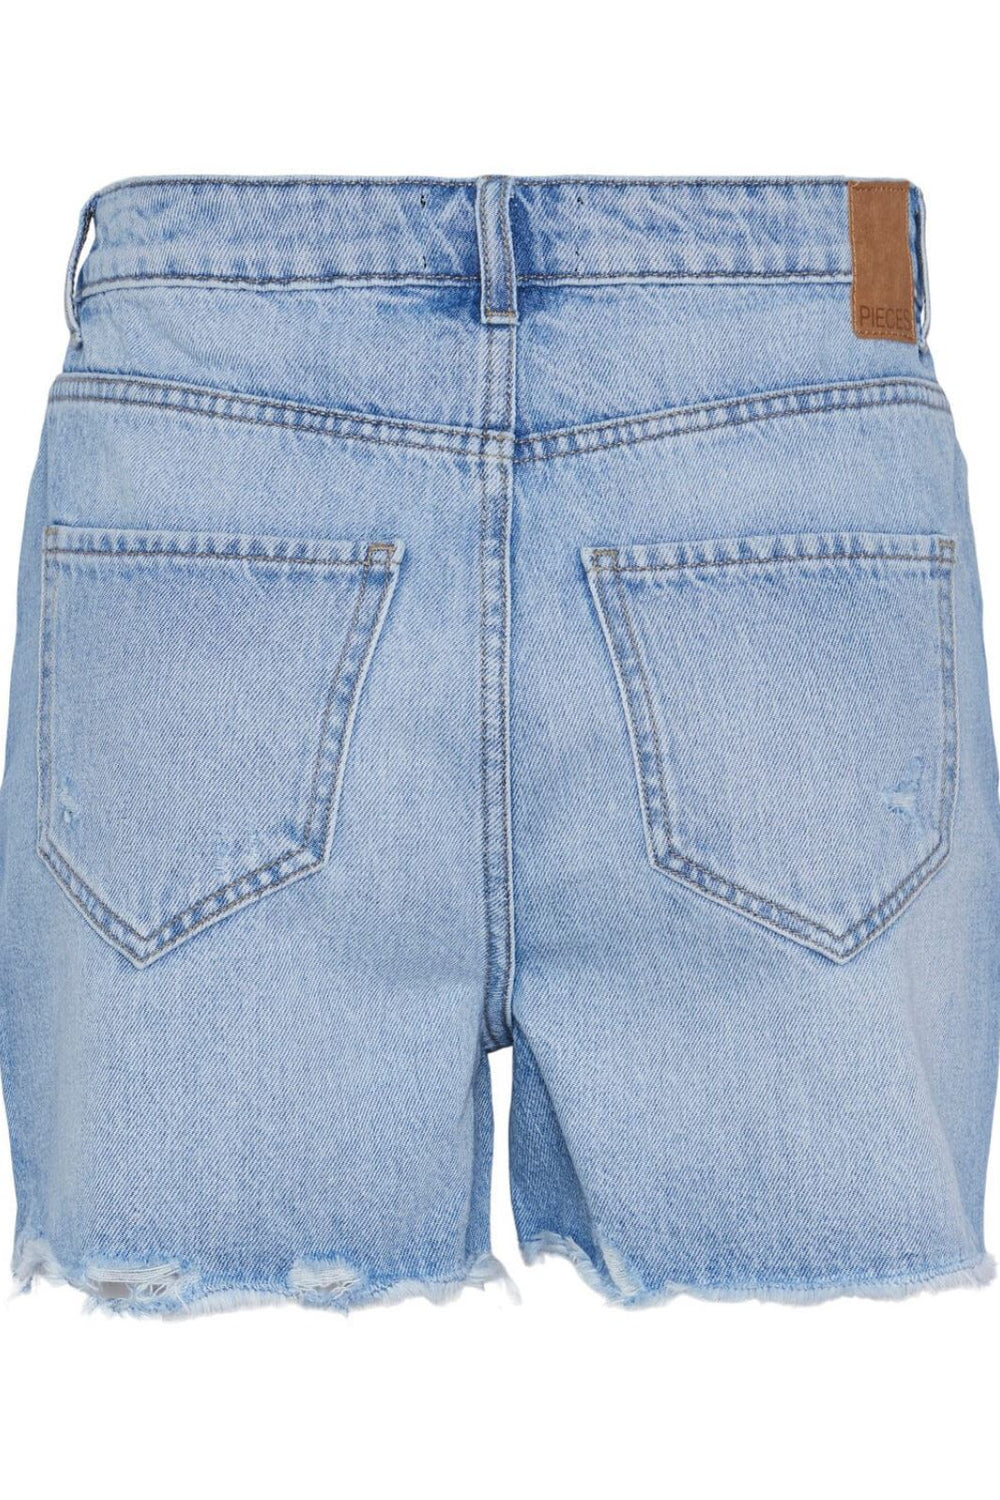 Pieces - Pcsummer Dest Lb Shorts - 4405831 Light Blue Denim Shorts 